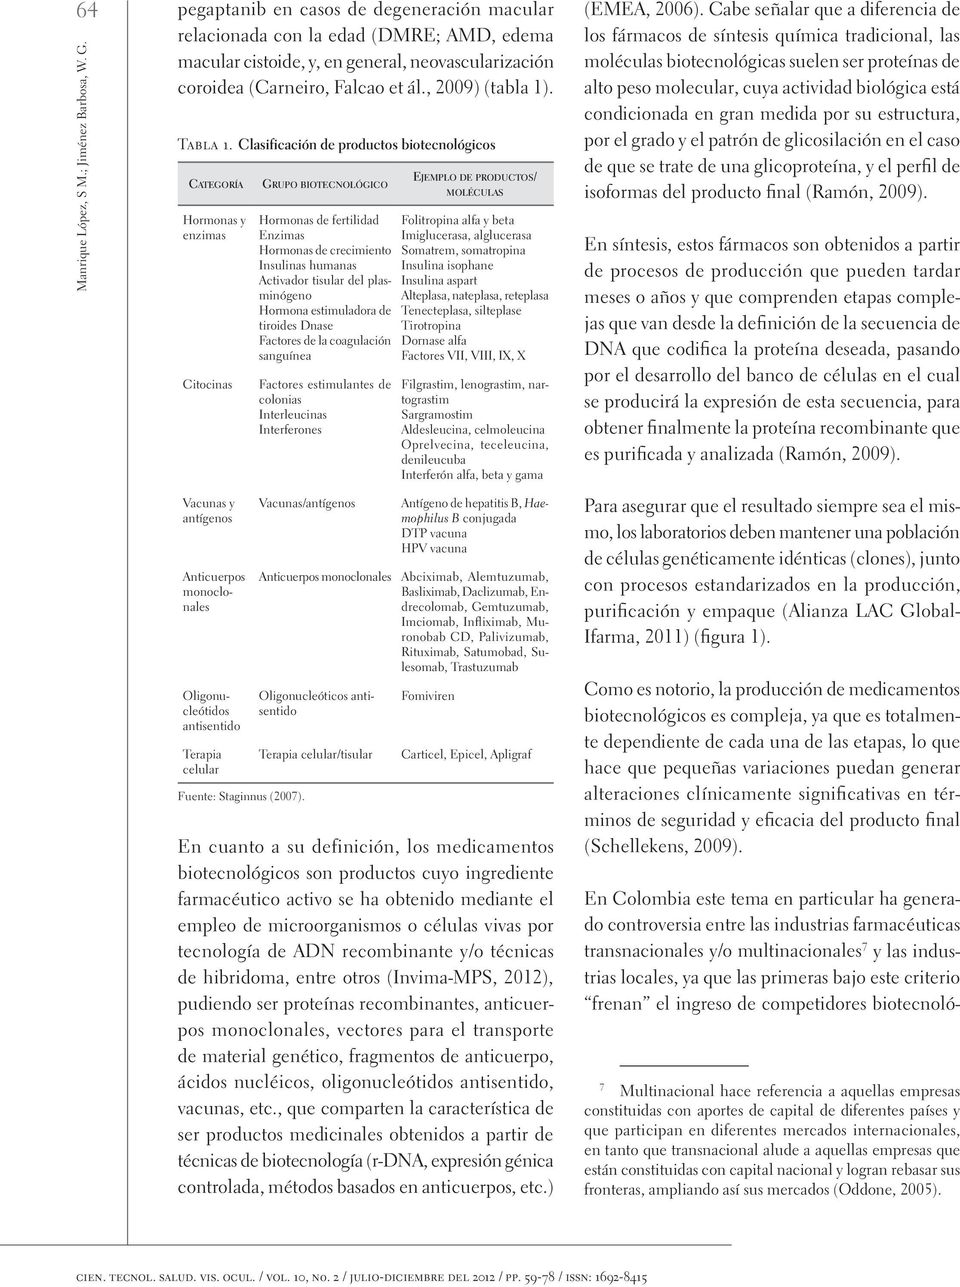 Clasificación de productos biotecnológicos Categoría Hormonas y enzimas Citocinas Vacunas y antígenos Anticuerpos monoclonales Oligonucleótidos antisentido Terapia celular Fuente: Staginnus (2007).